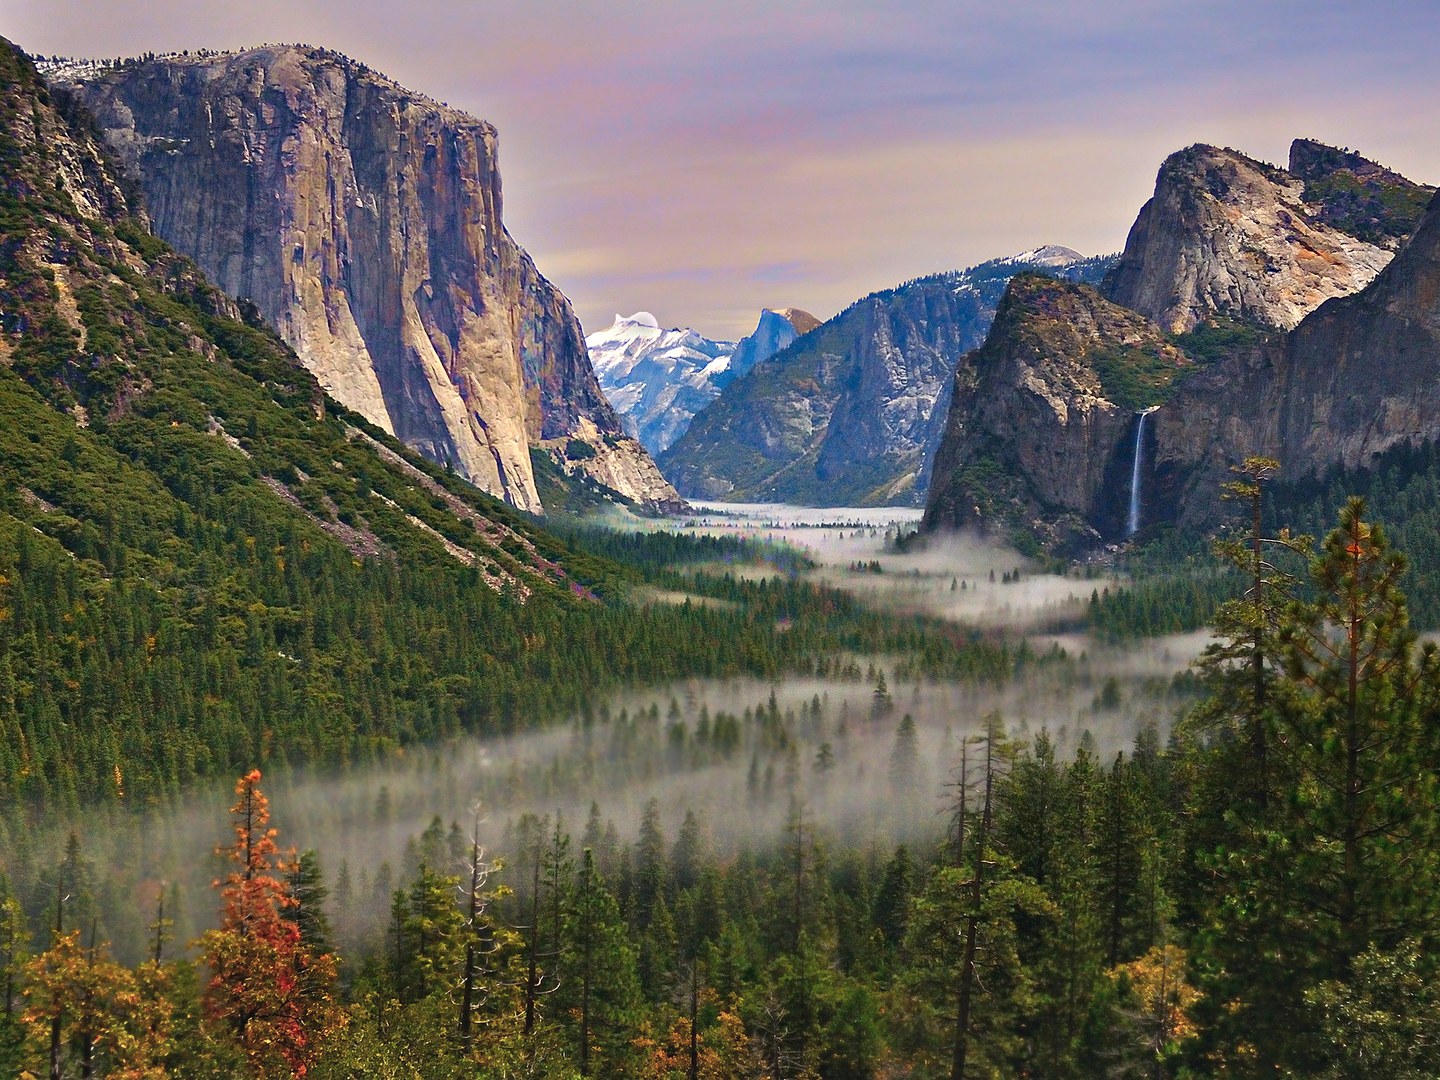 Thác nước Yosemite cao 739m và là một điểm thu hút số lượng lớn khách du lịch đến tham quan, đặc biệt là vào cuối mùa xuân khi lưu lượng nước ở trạng thái cao nhất.Thác nước Yosemite cao 739m và là một điểm thu hút số lượng lớn khách du lịch khi đến với vườn quốc gia này, đặc biệt là vào cuối mùa xuân khi lưu lượng nước ở trạng thái cao nhất.